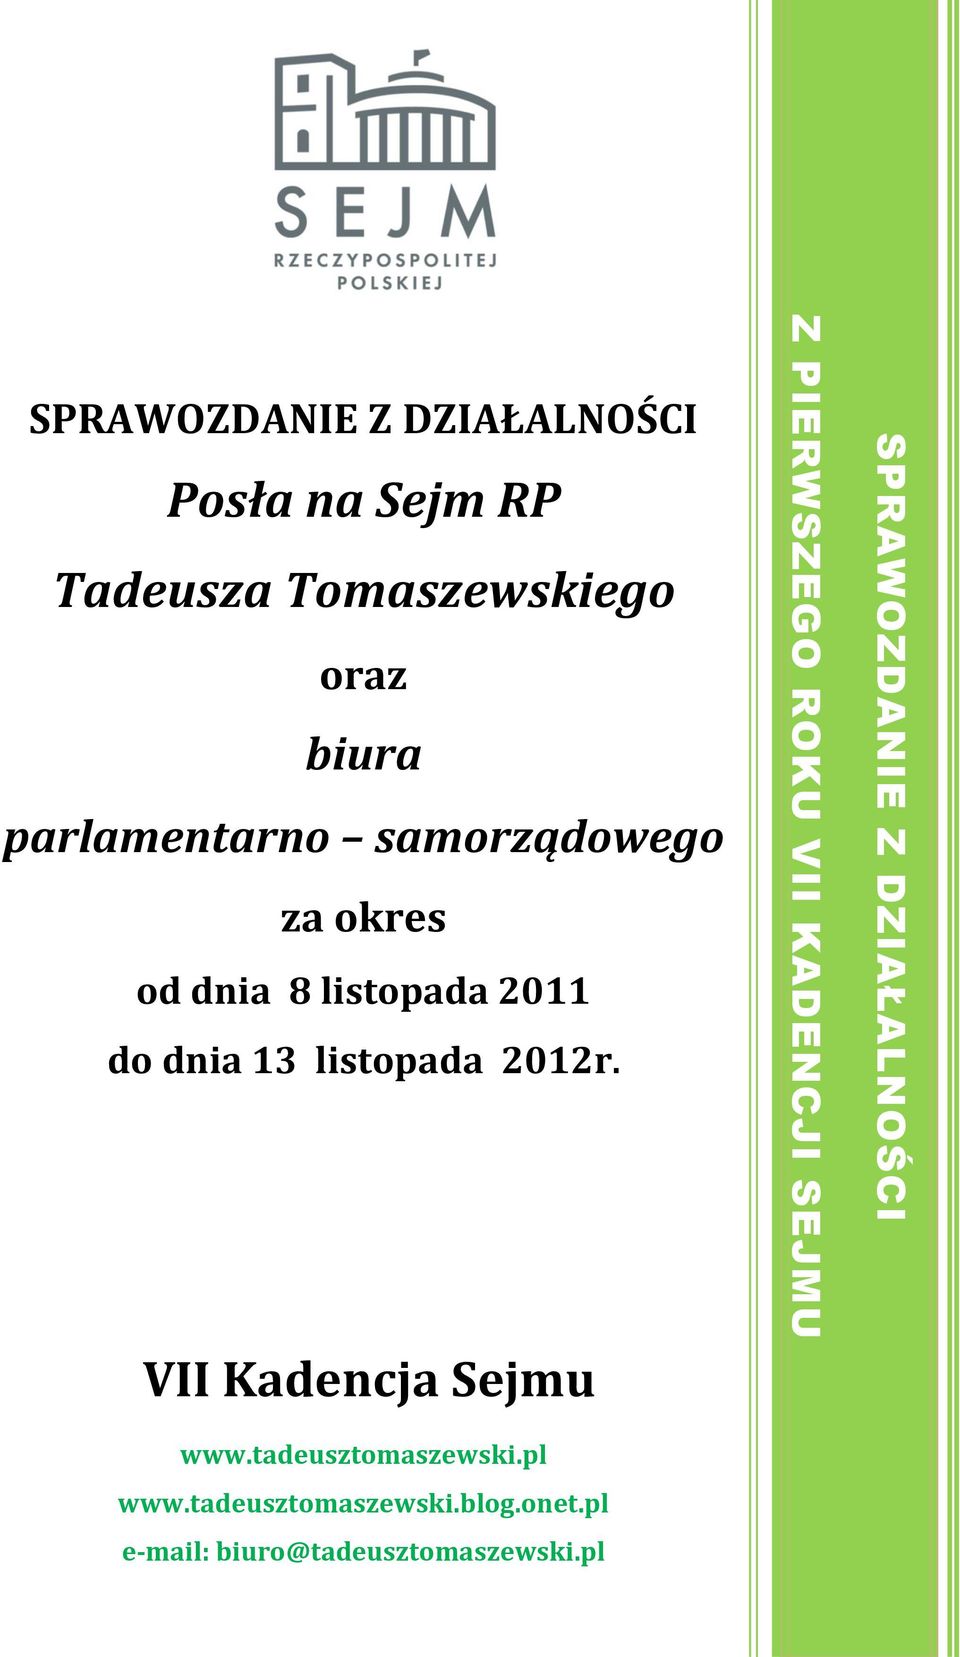 samorządowego za okres od dnia 8 listopada 2011 do dnia 13 listopada 2012r.